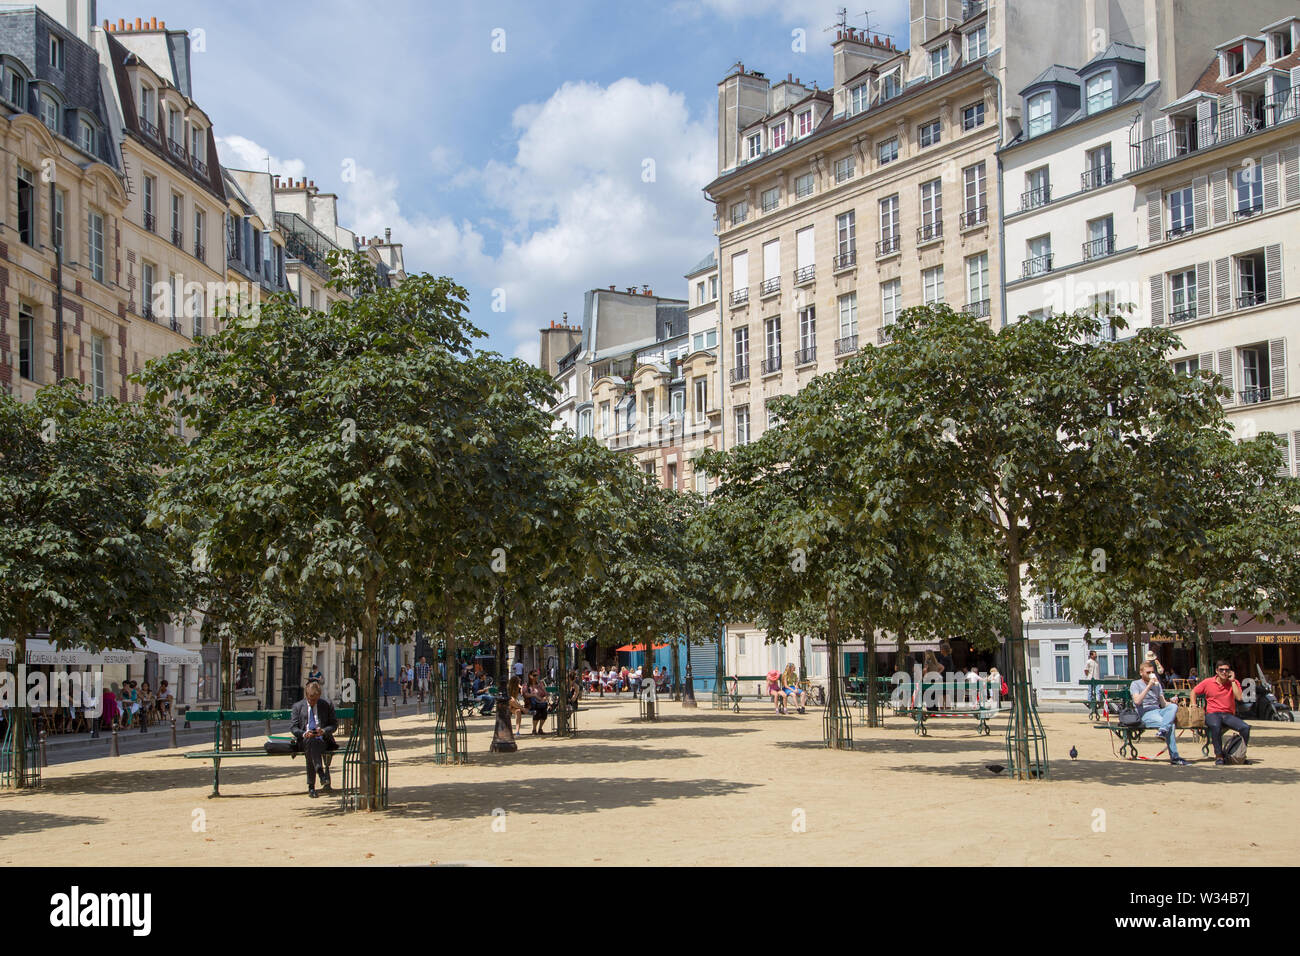 Paris, France - August 05, 2014: the Place Dauphine (Square Dauphine), Ile de La Cité, at Paris Stock Photo